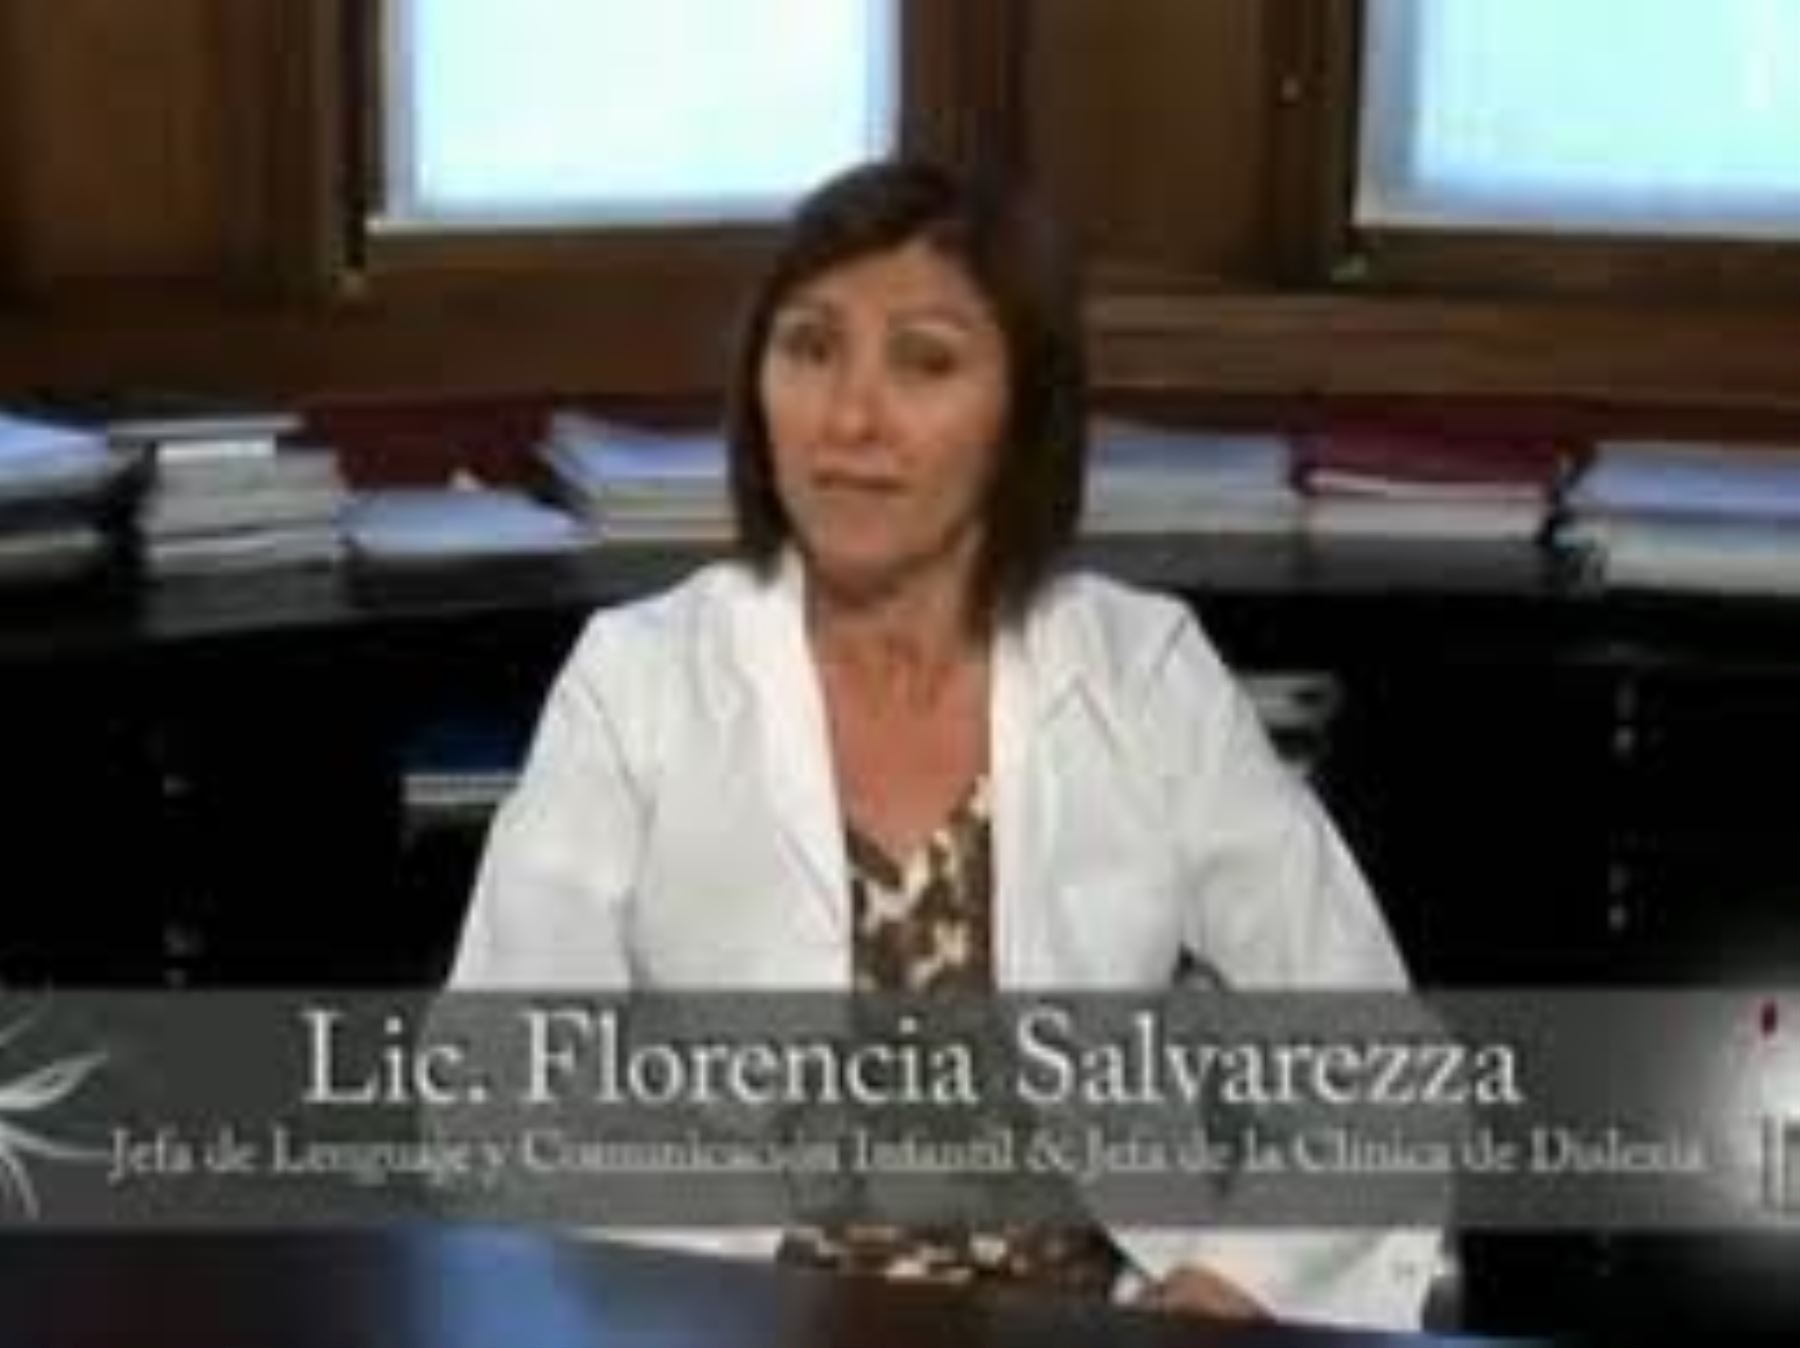 Florencia Salvarezza, experta argentina en neurociencia, neuroeducación y tratamiento de trastornos del lenguaje.